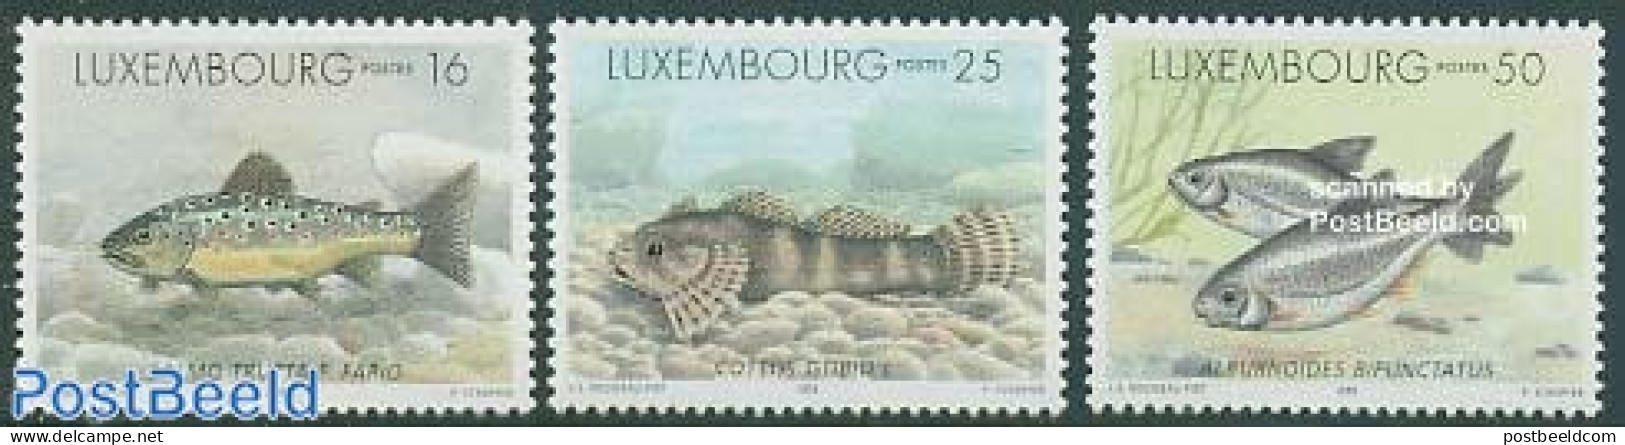 Luxemburg 1998 Fish 3v, Mint NH, Nature - Fish - Nuovi